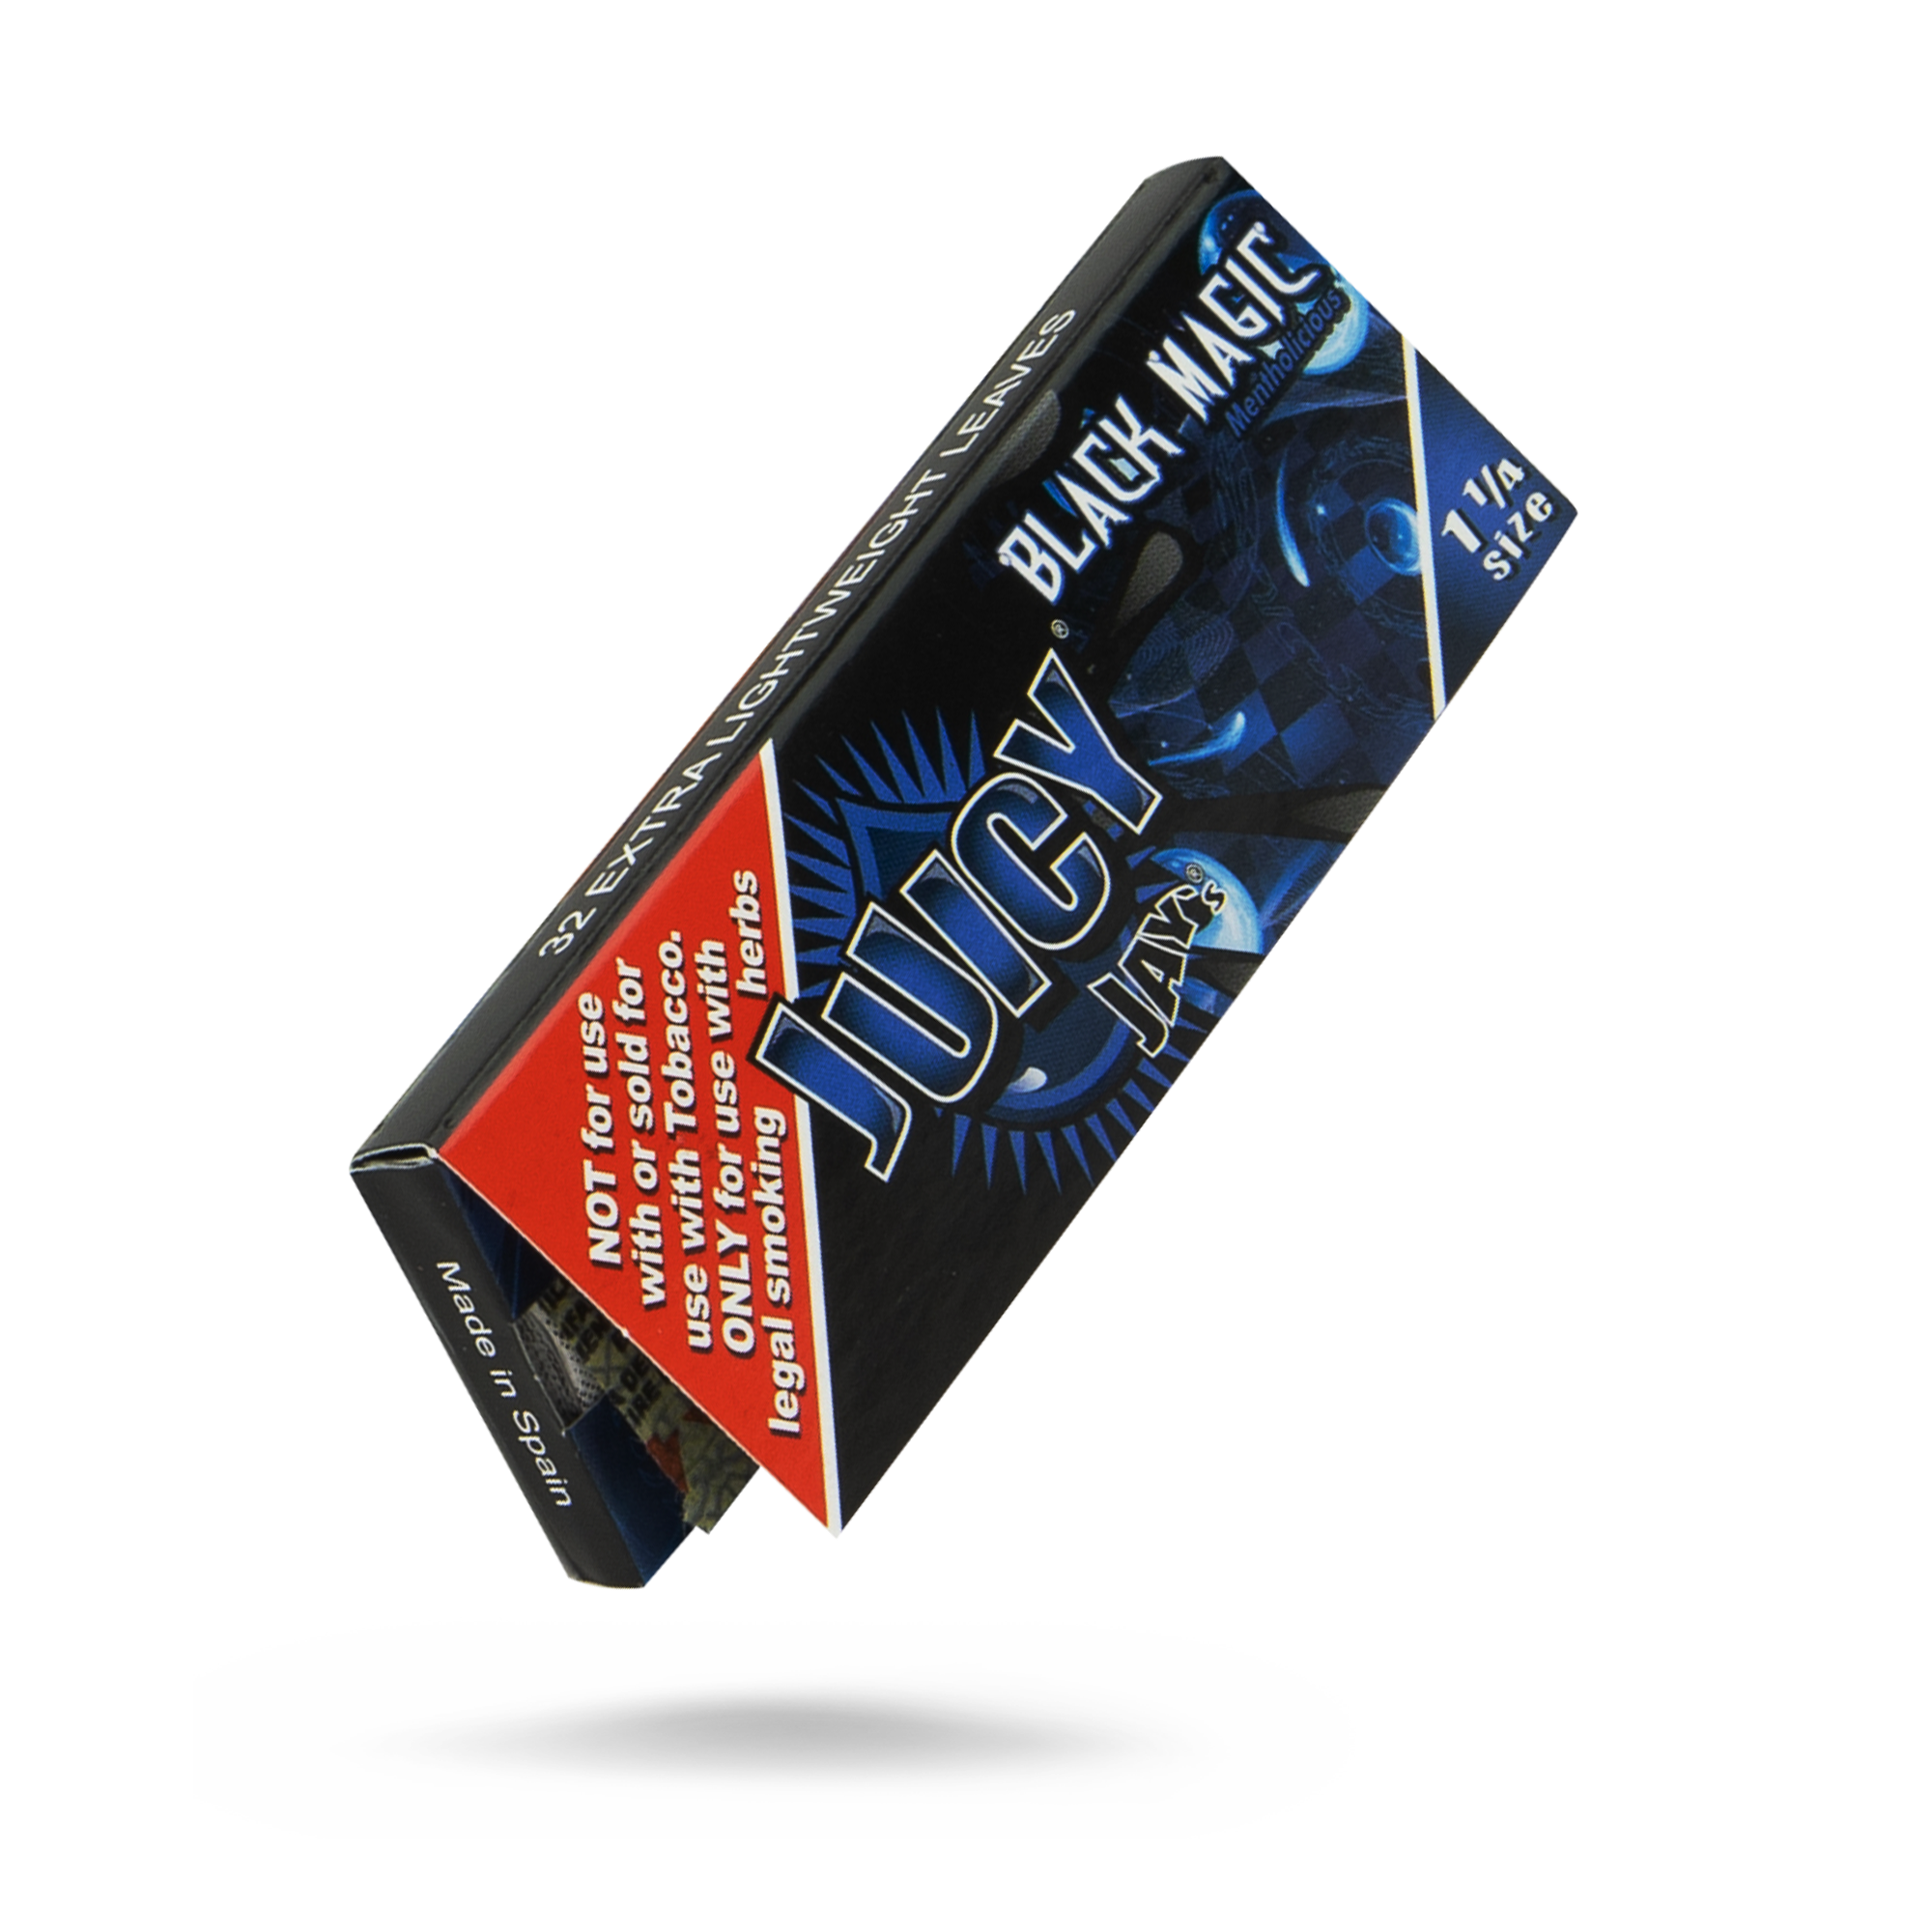 Buy Juicy Jays 1 1/4 Black Magic Flavored Hemp Rolling Papers 